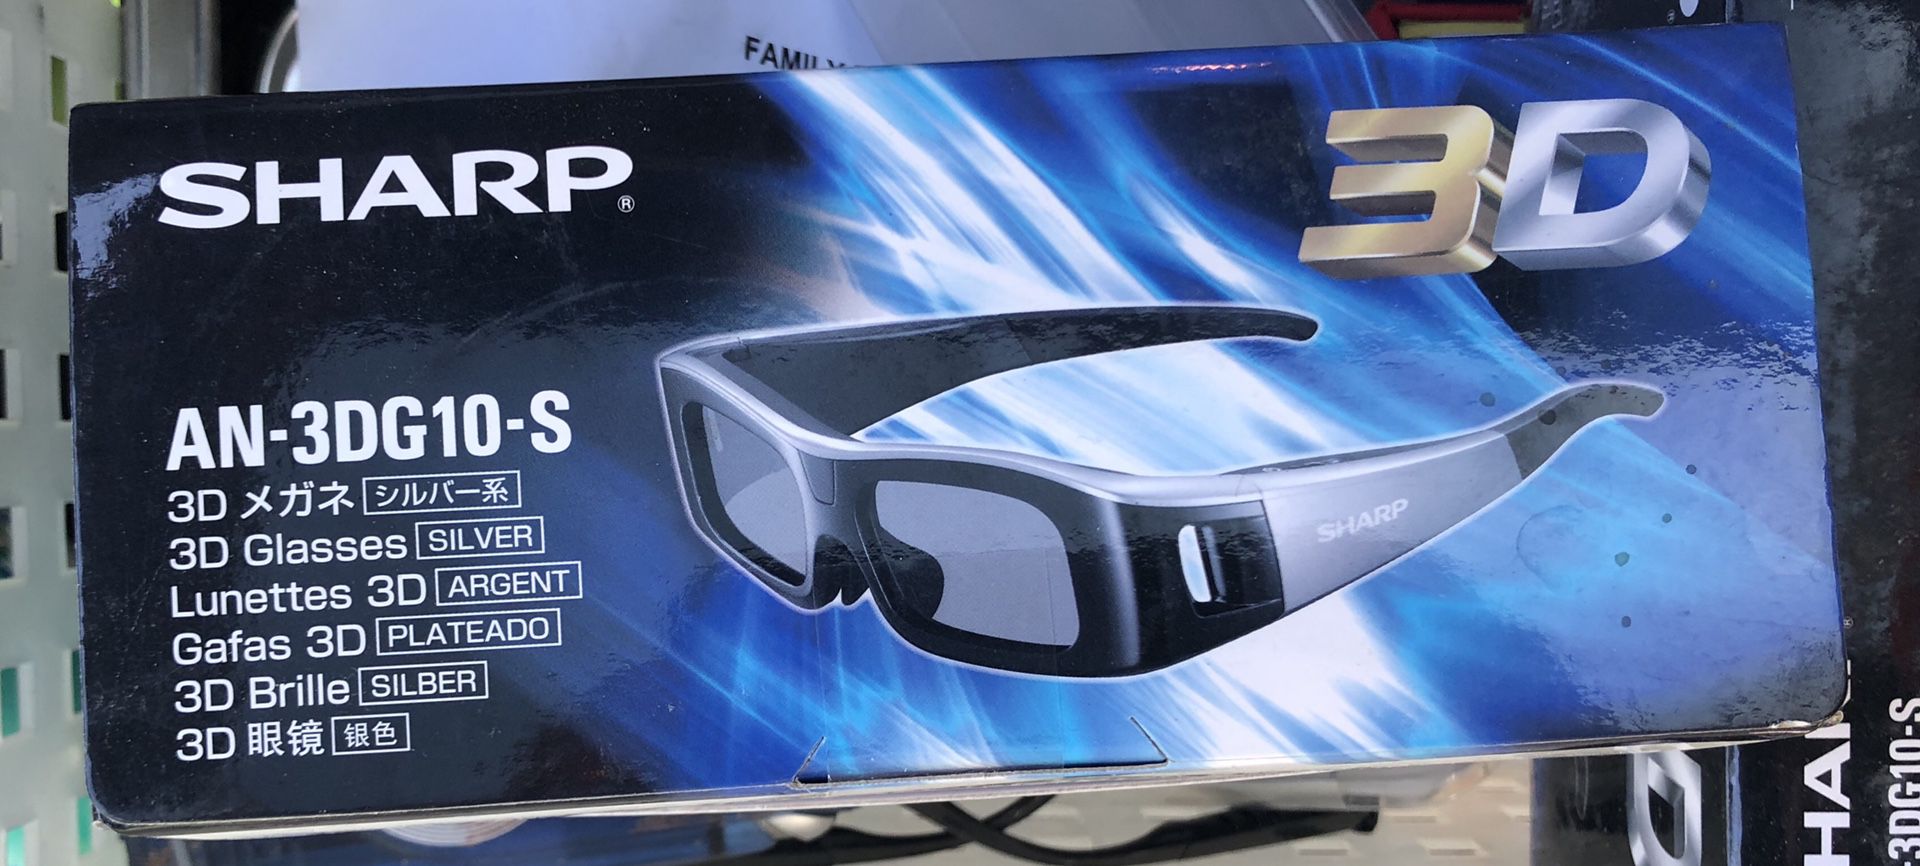 Sharp AN-3DG10-S 3D Glasses